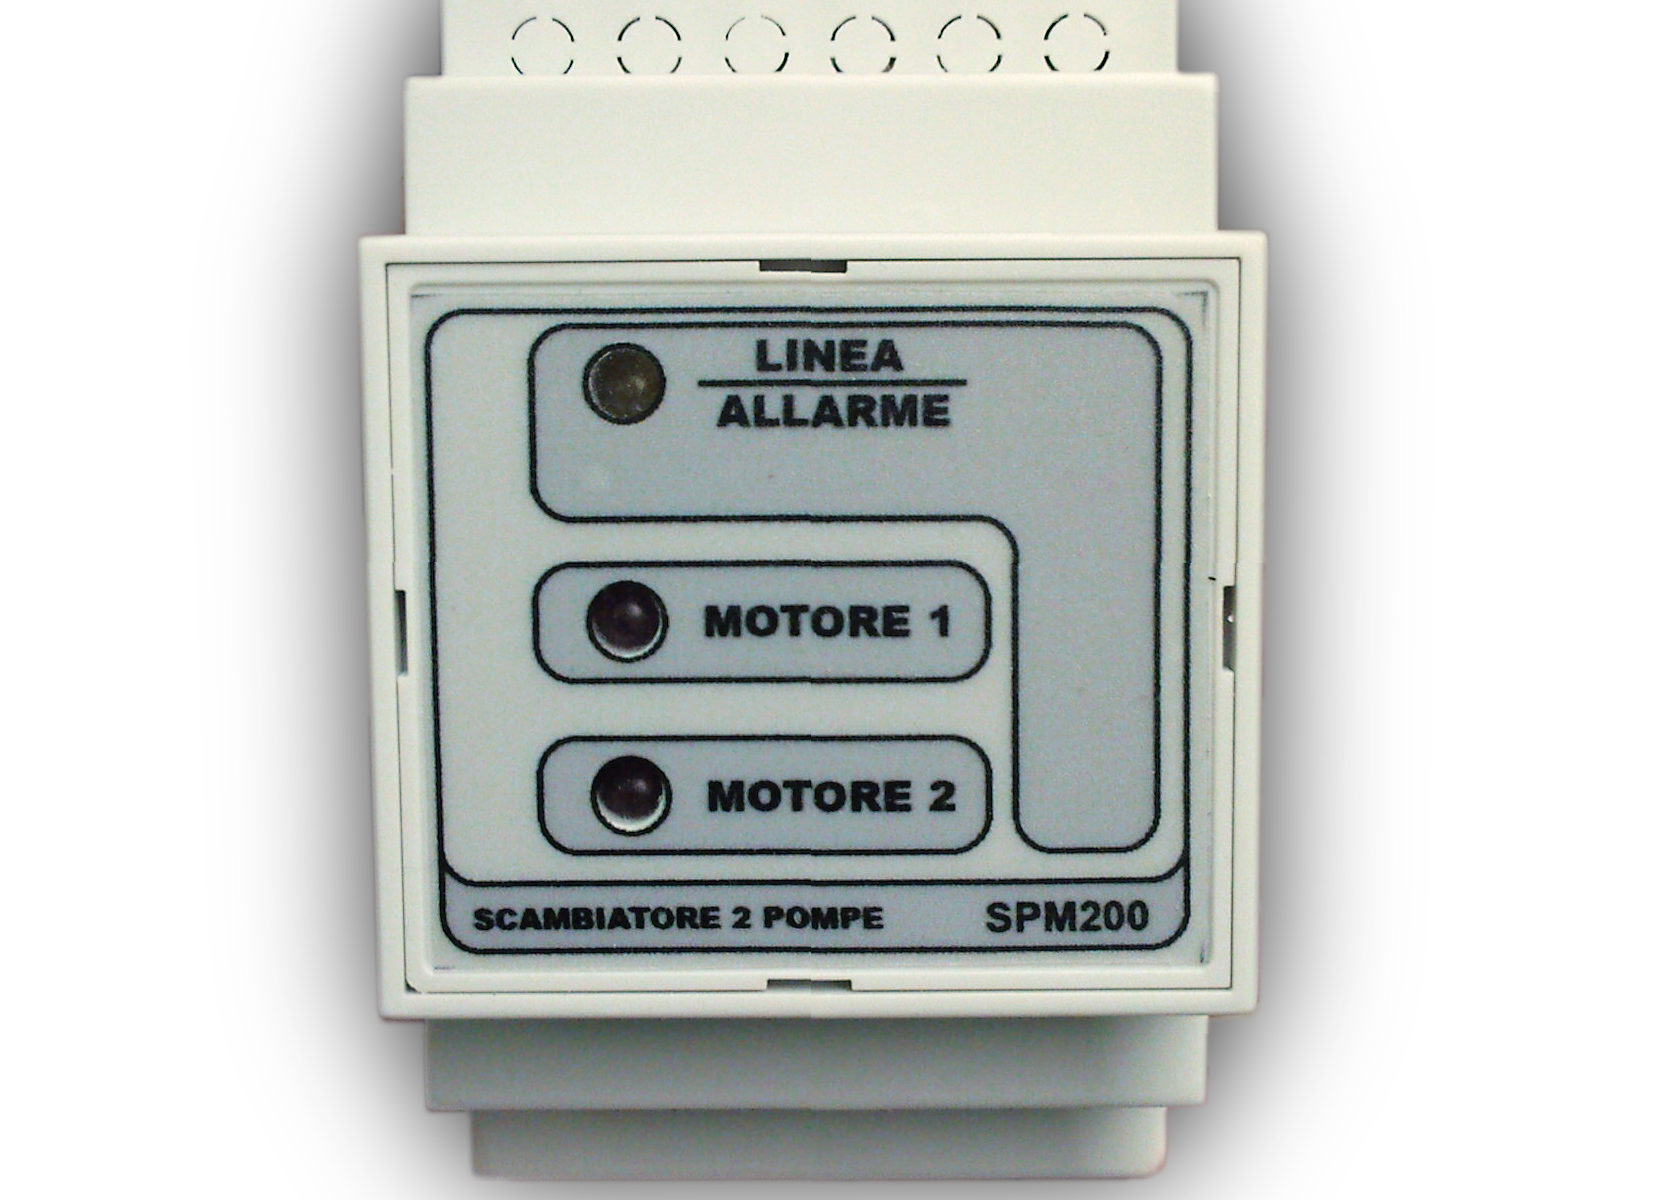 SPM200 – Scambiatore per due elettropompe con controllo contro la marcia a secco e soccorso seconda pompa